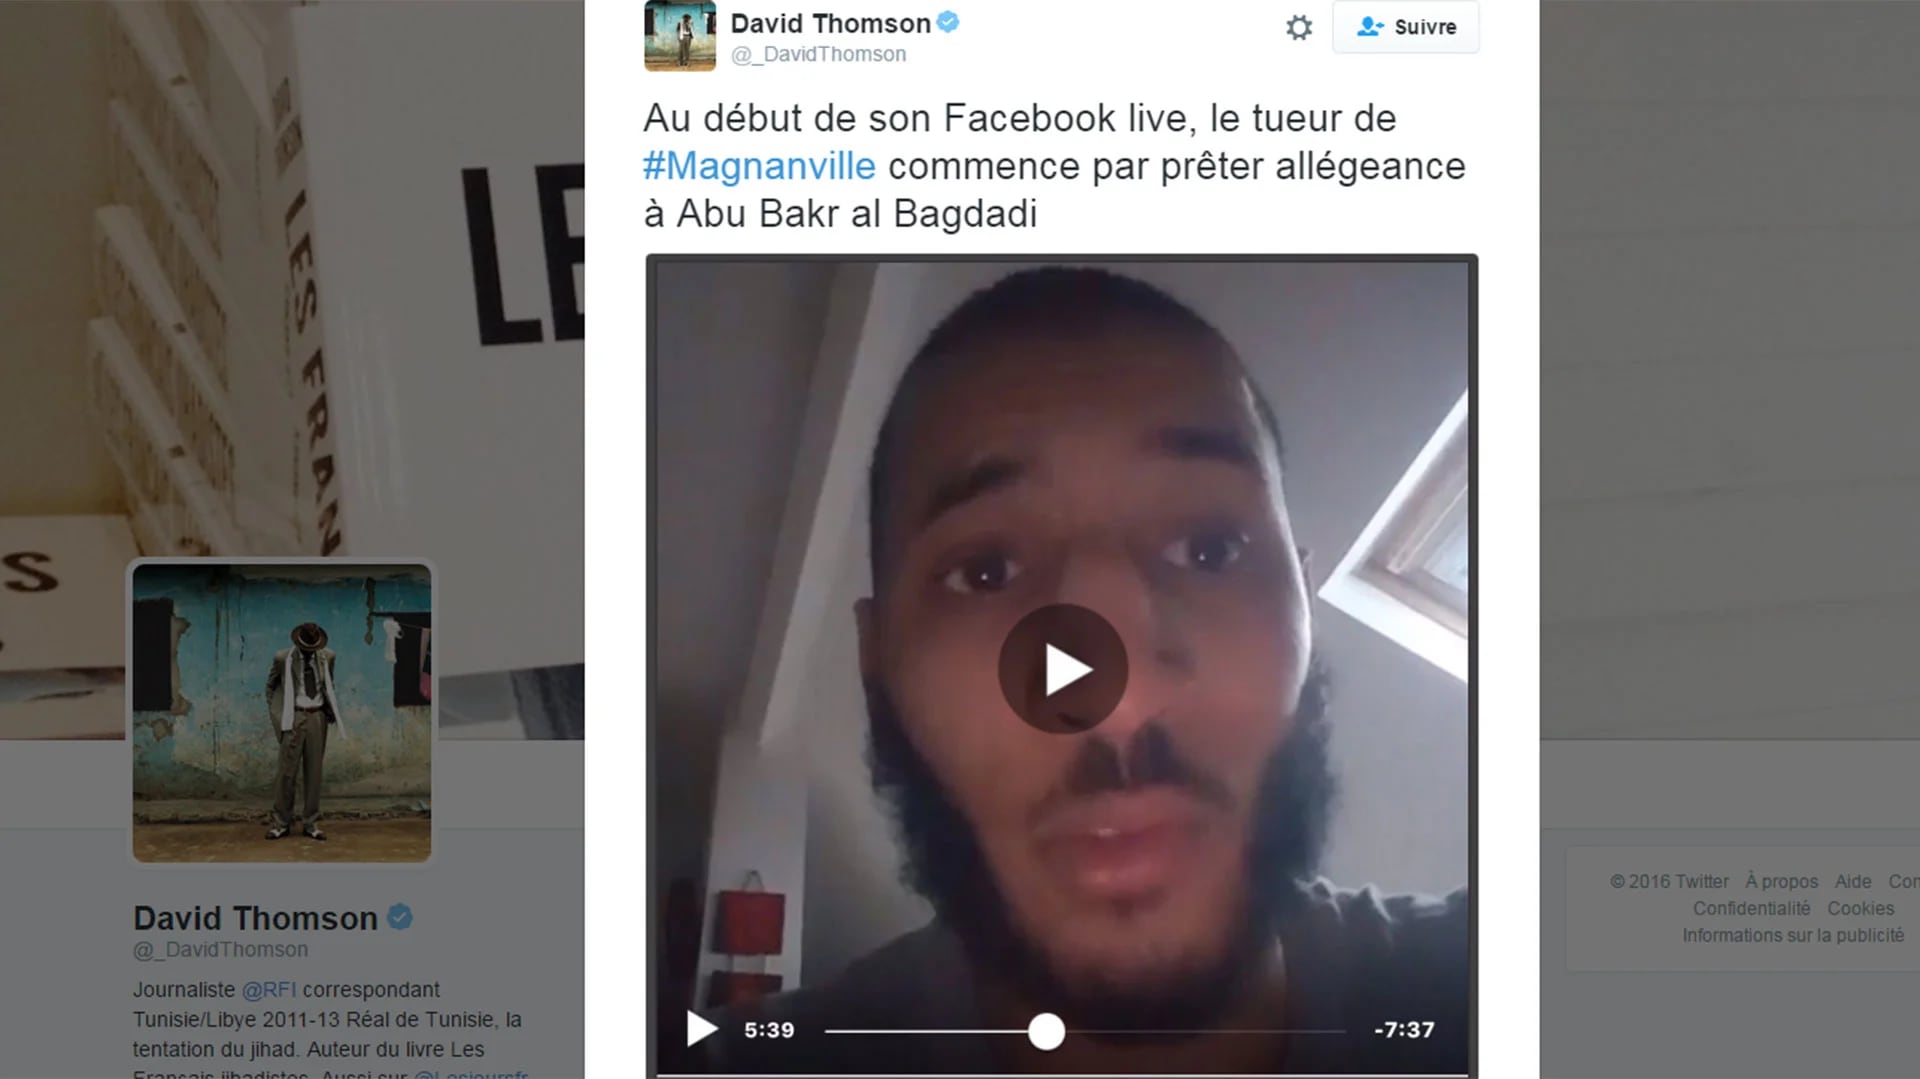 Ésta es una copia de pantalla del video que el terrorista Larossi Abballa difundió en Facebook Live, según reportó el periodista David Thomson en su cuenta de Twitter